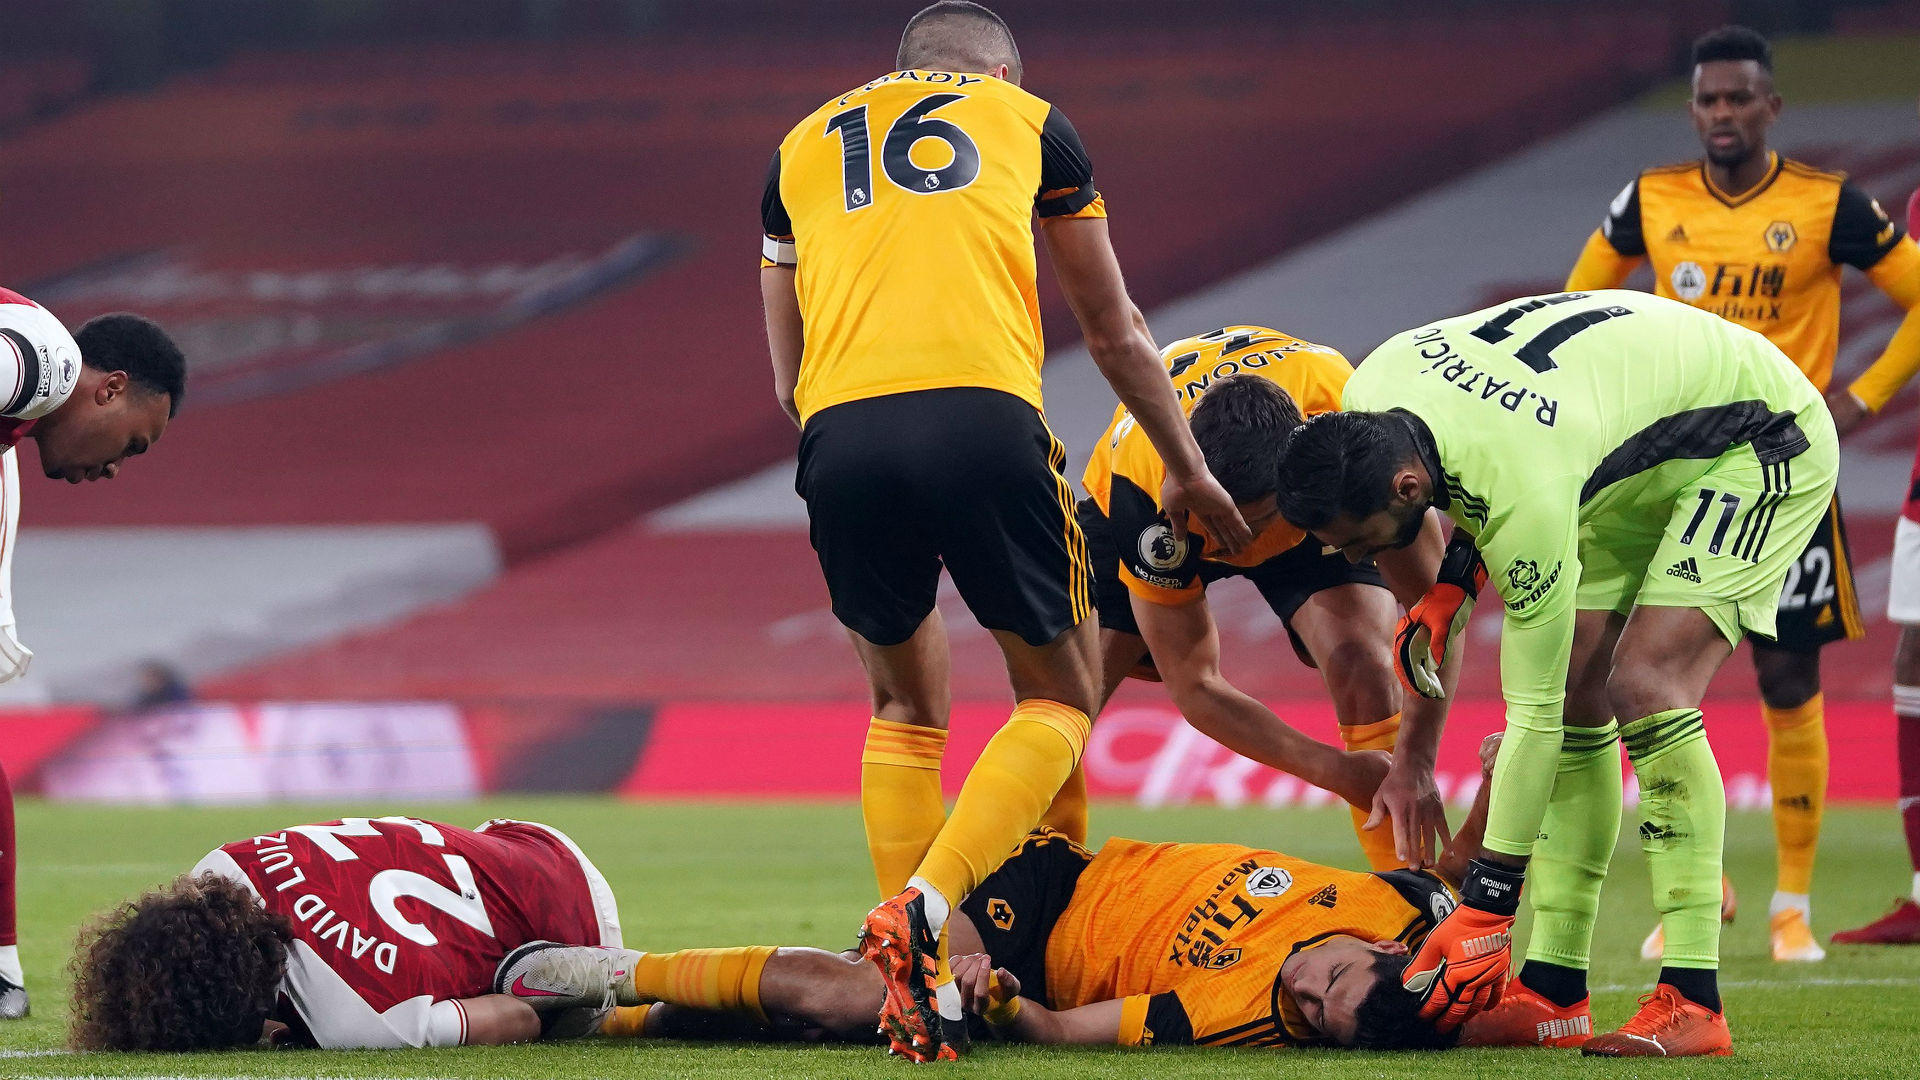 Jimenez's 'horrible' head clash distressed Wolves captain Coady